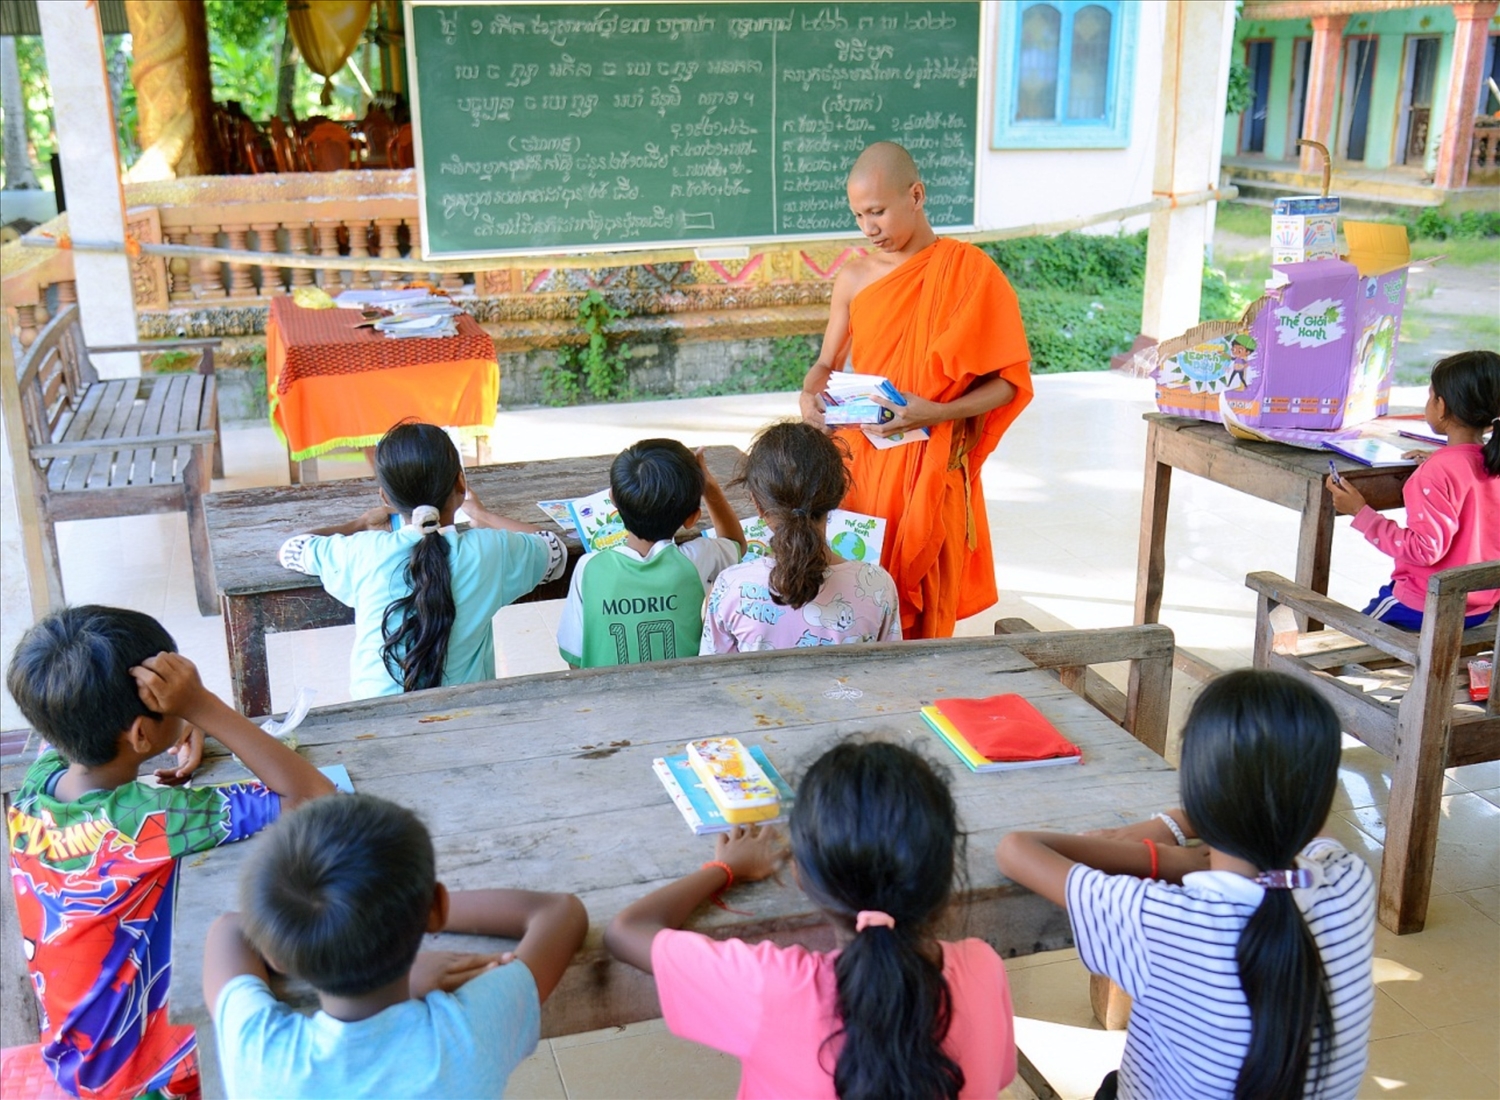 Sư Kim Chí Thanh, chùa Sê Rây Tà Mơn, ấp Đào Viên (xã Viên Bình, huyện Trần Đề, tỉnh Sóc Trăng) đang giảng dạy em trong các phum, sóc, học tiếng Khmer